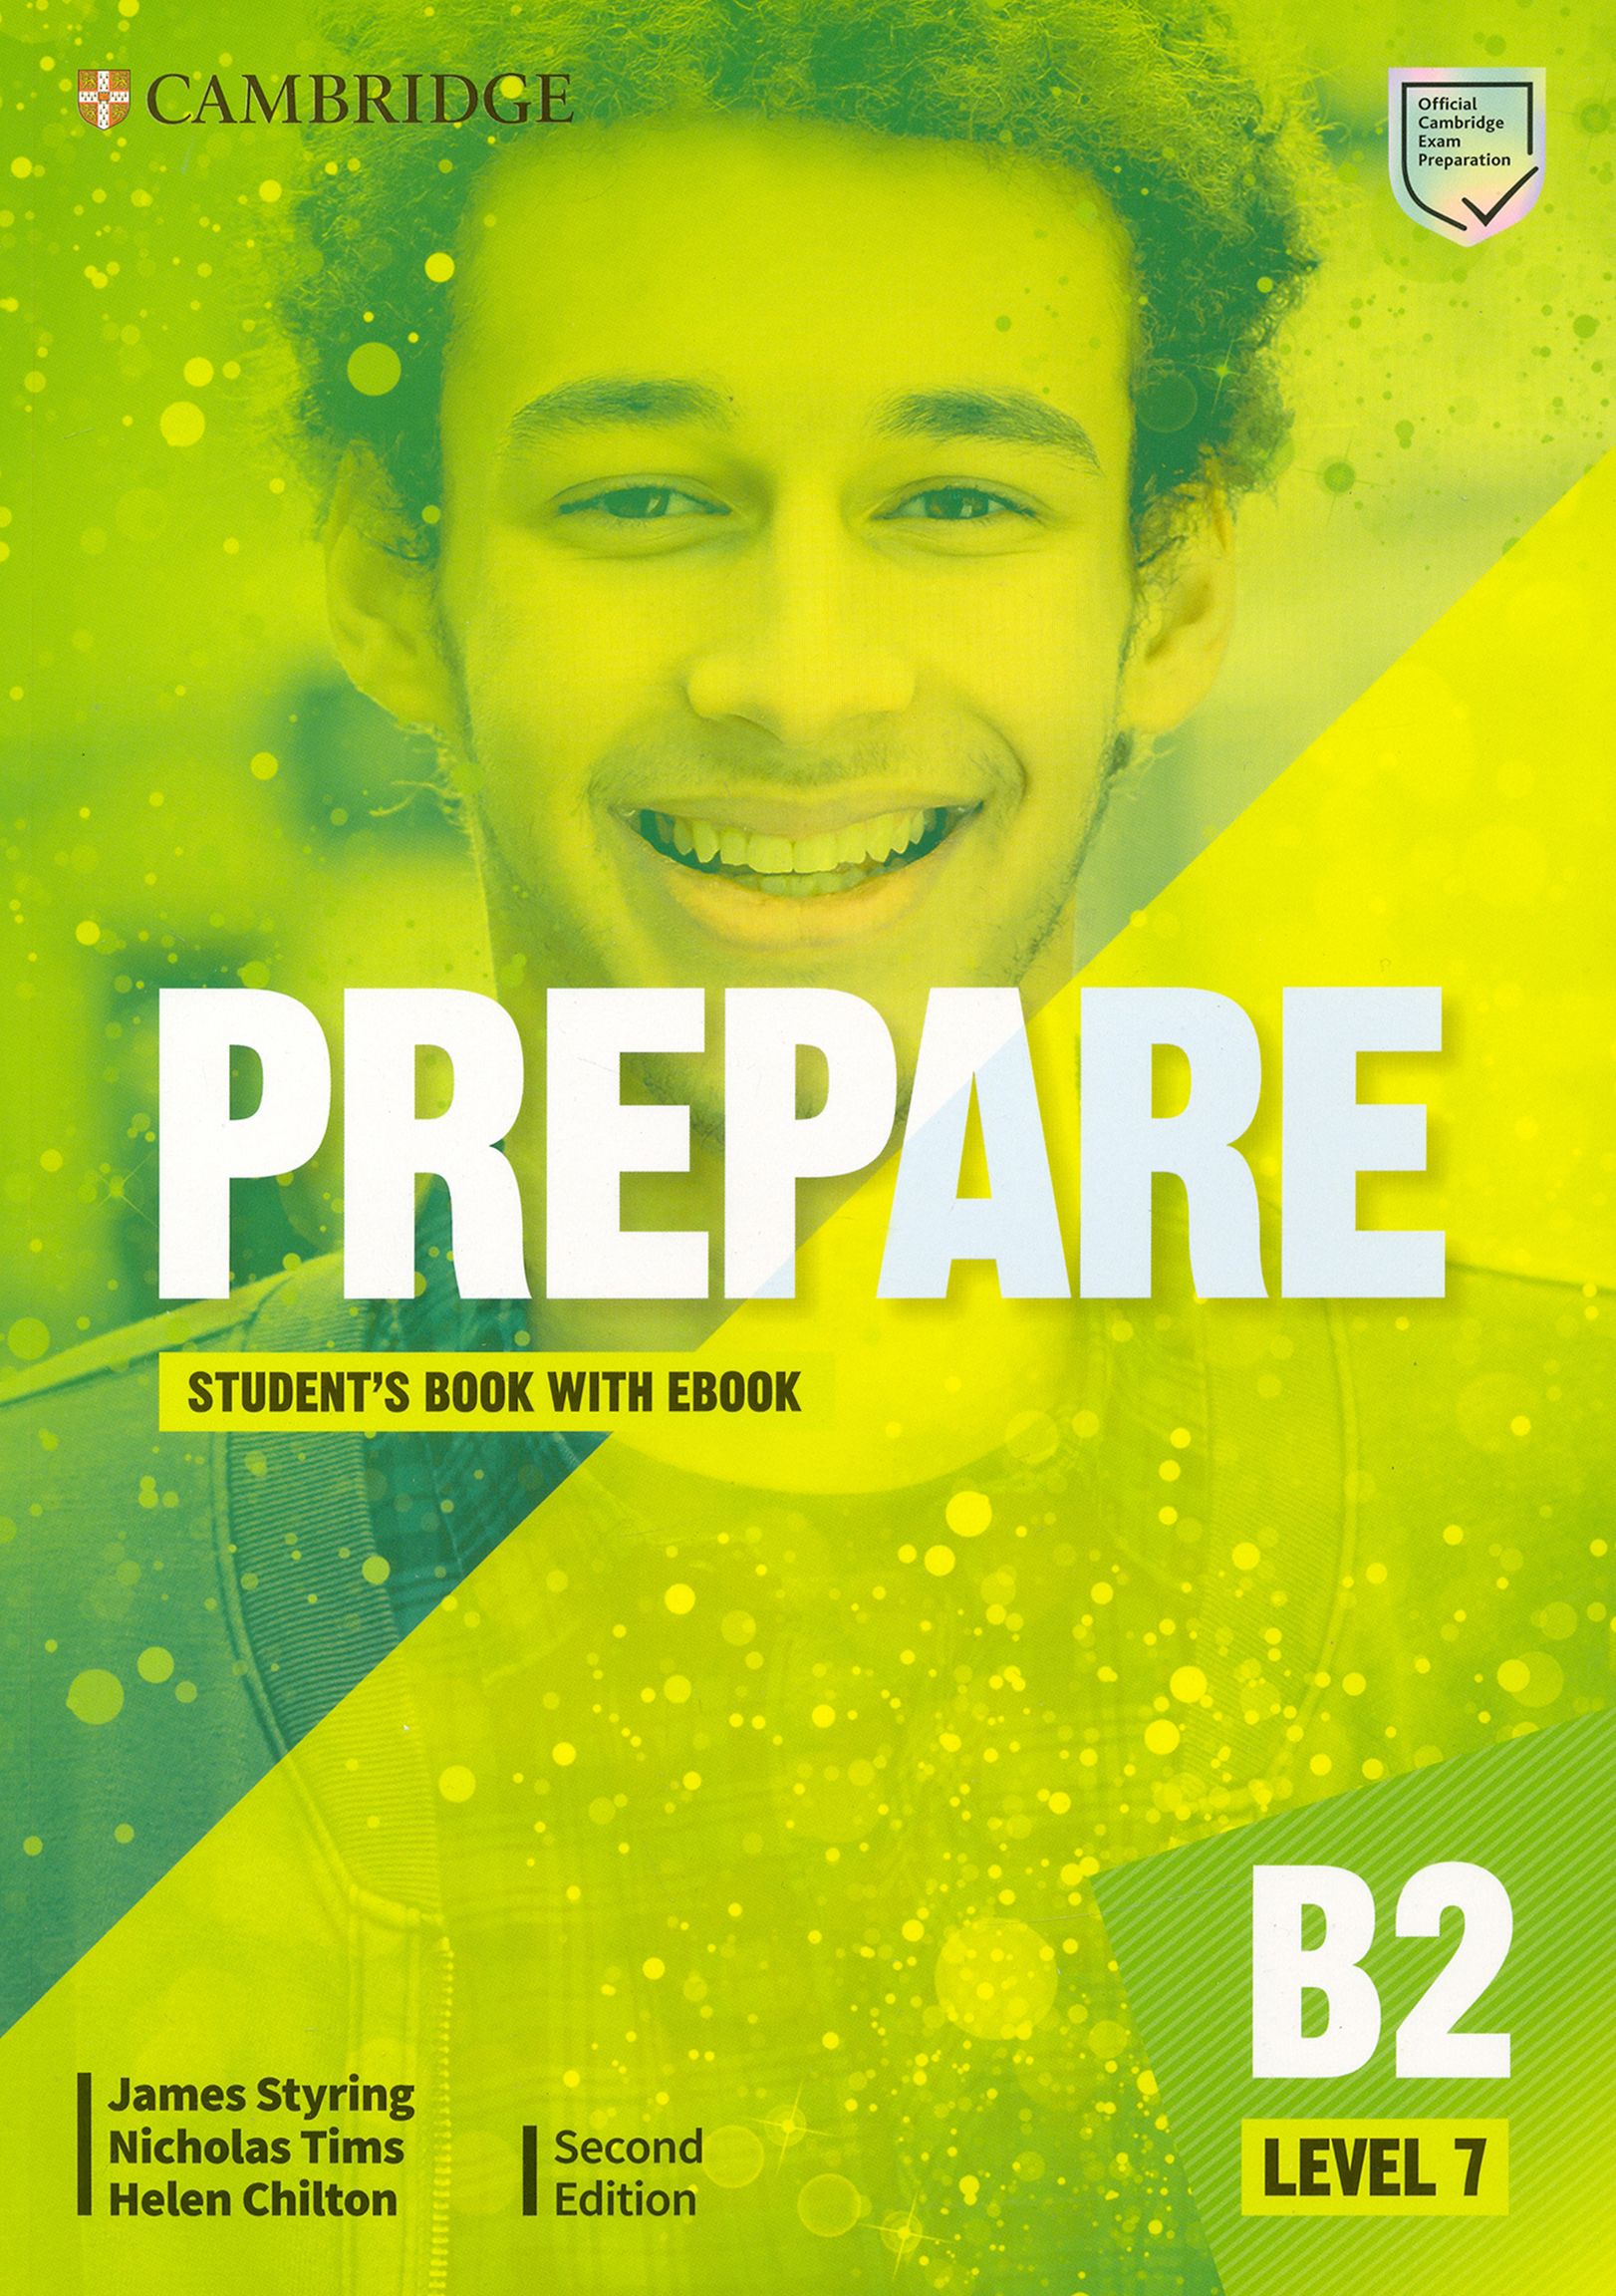 Prepare second Edition Level 7. Cambridge prepare 2nd Edition b1. Cambridge prepare 2ed Level 2 Plus. Prepare 2nd Edition Level 4. Prepare 2nd edition